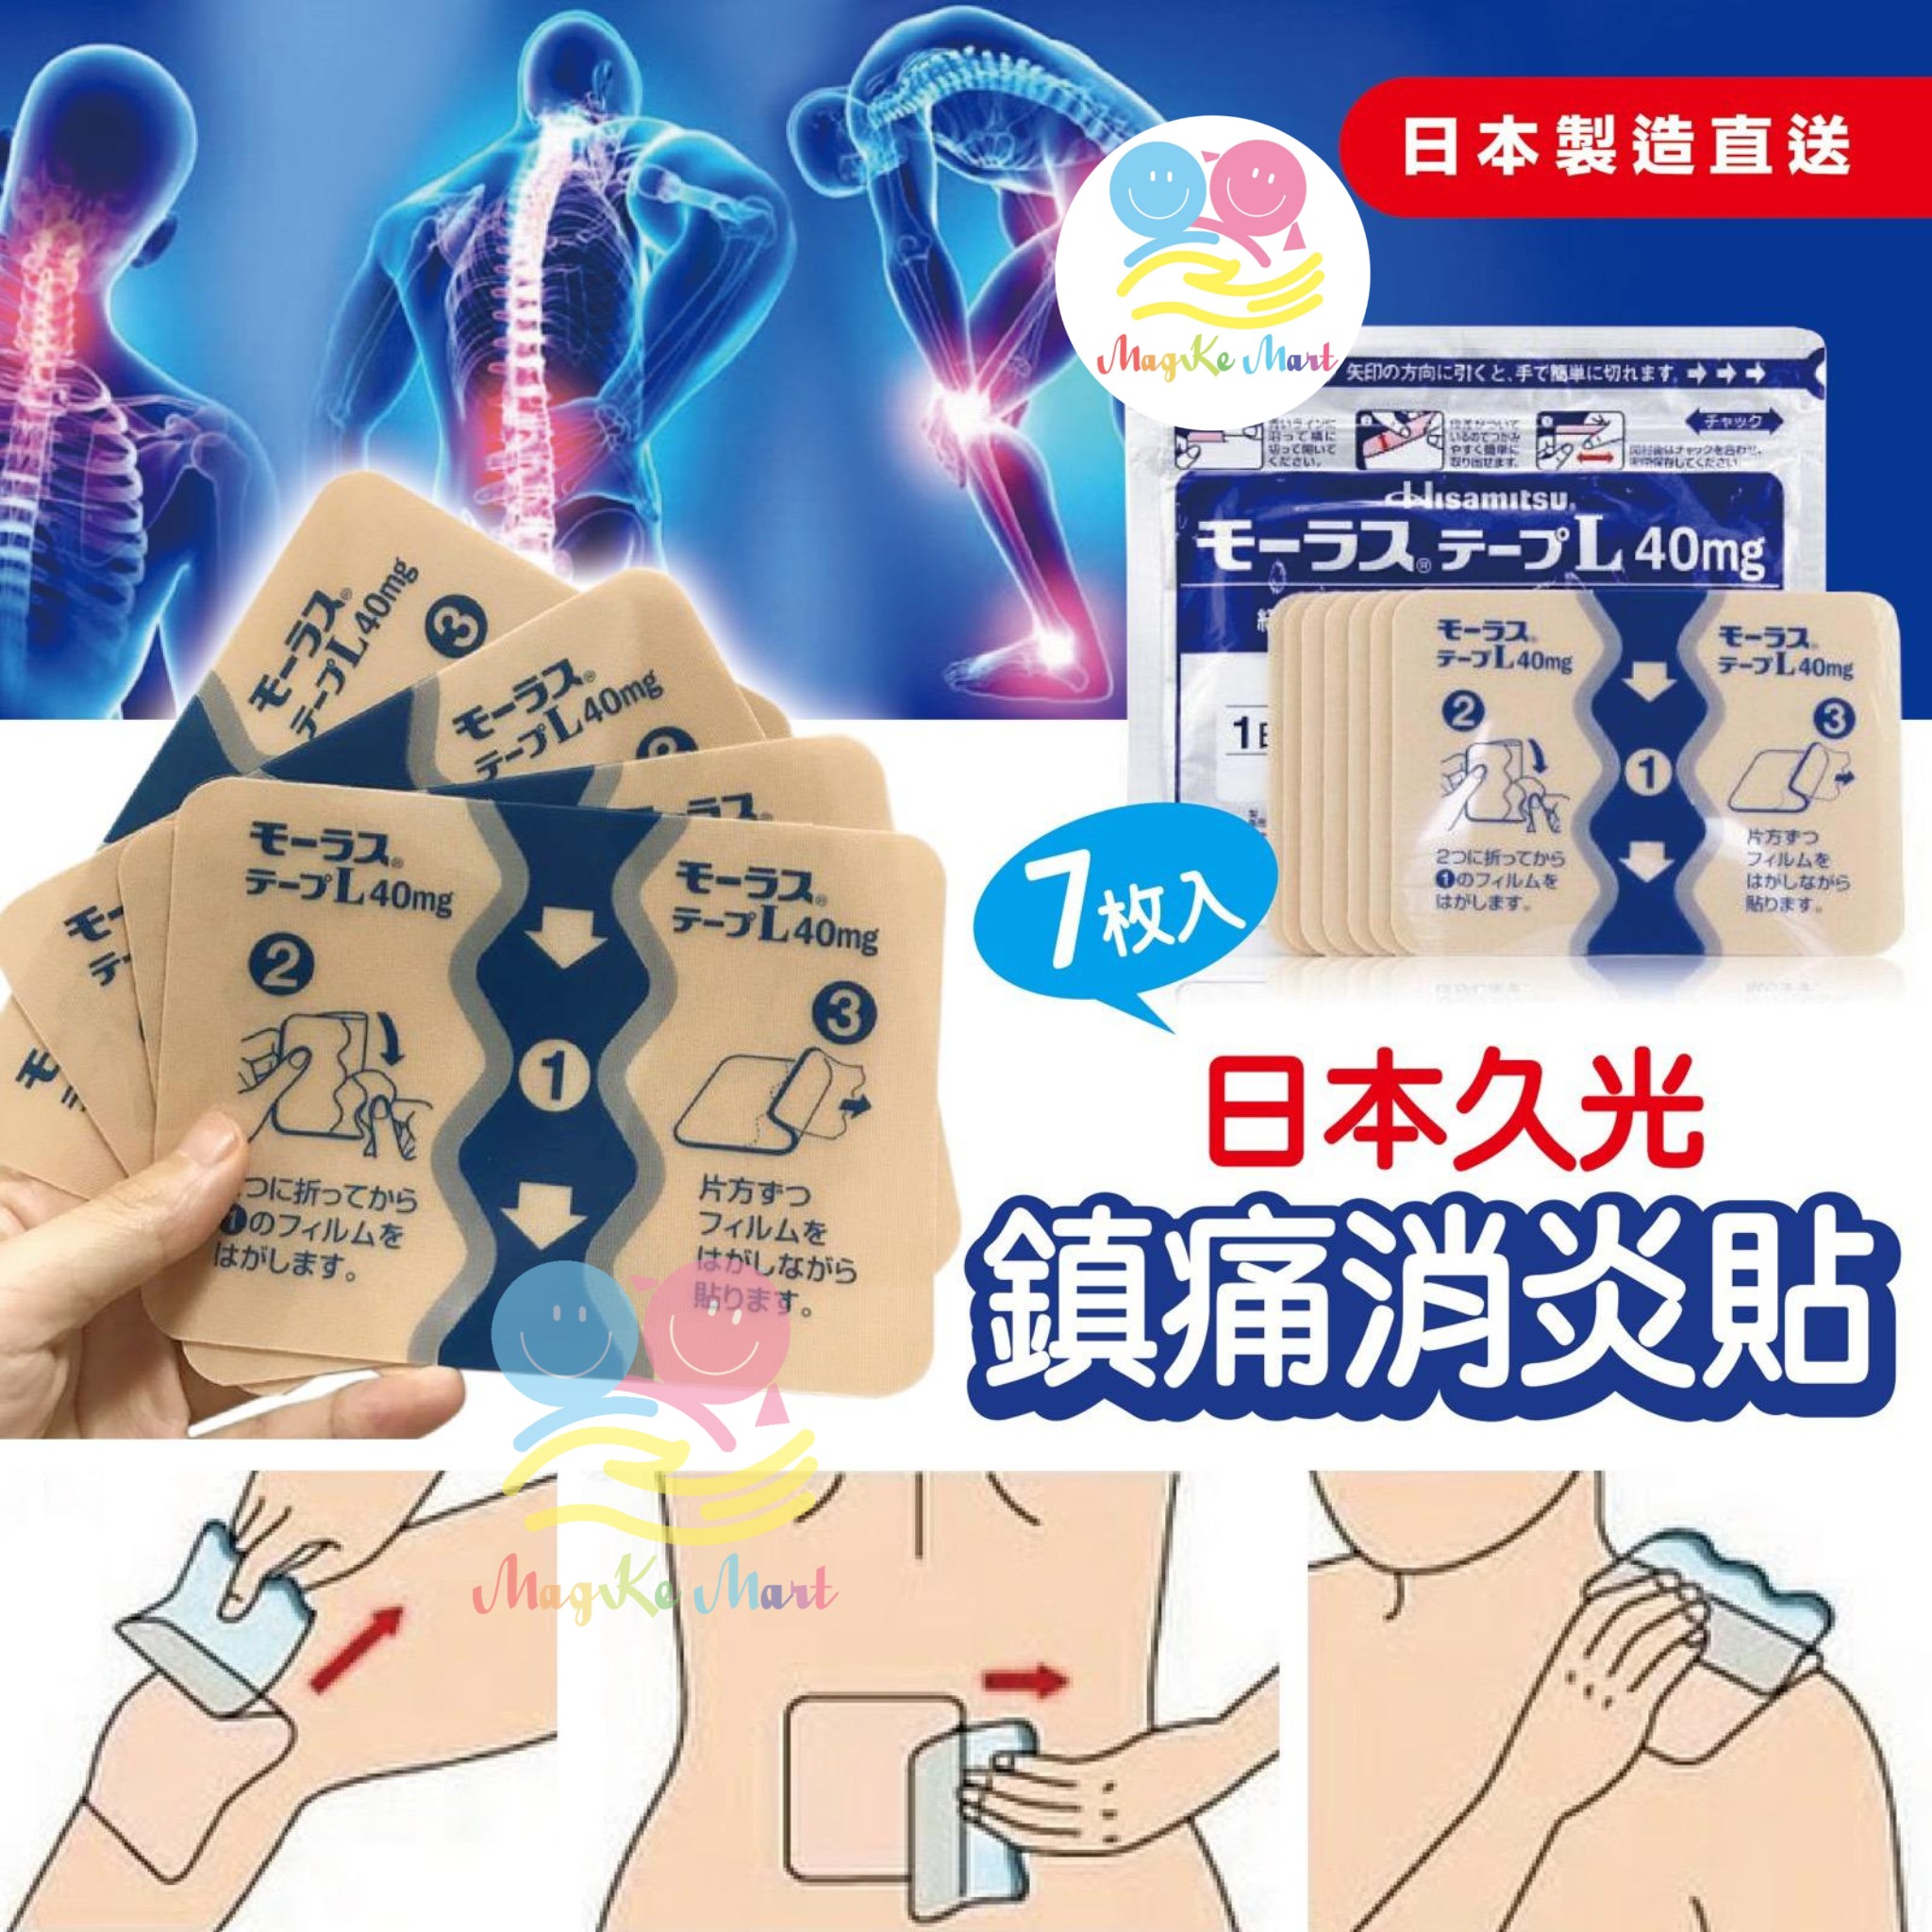 日本久光製藥鎮痛消炎貼40mg (1包7枚)